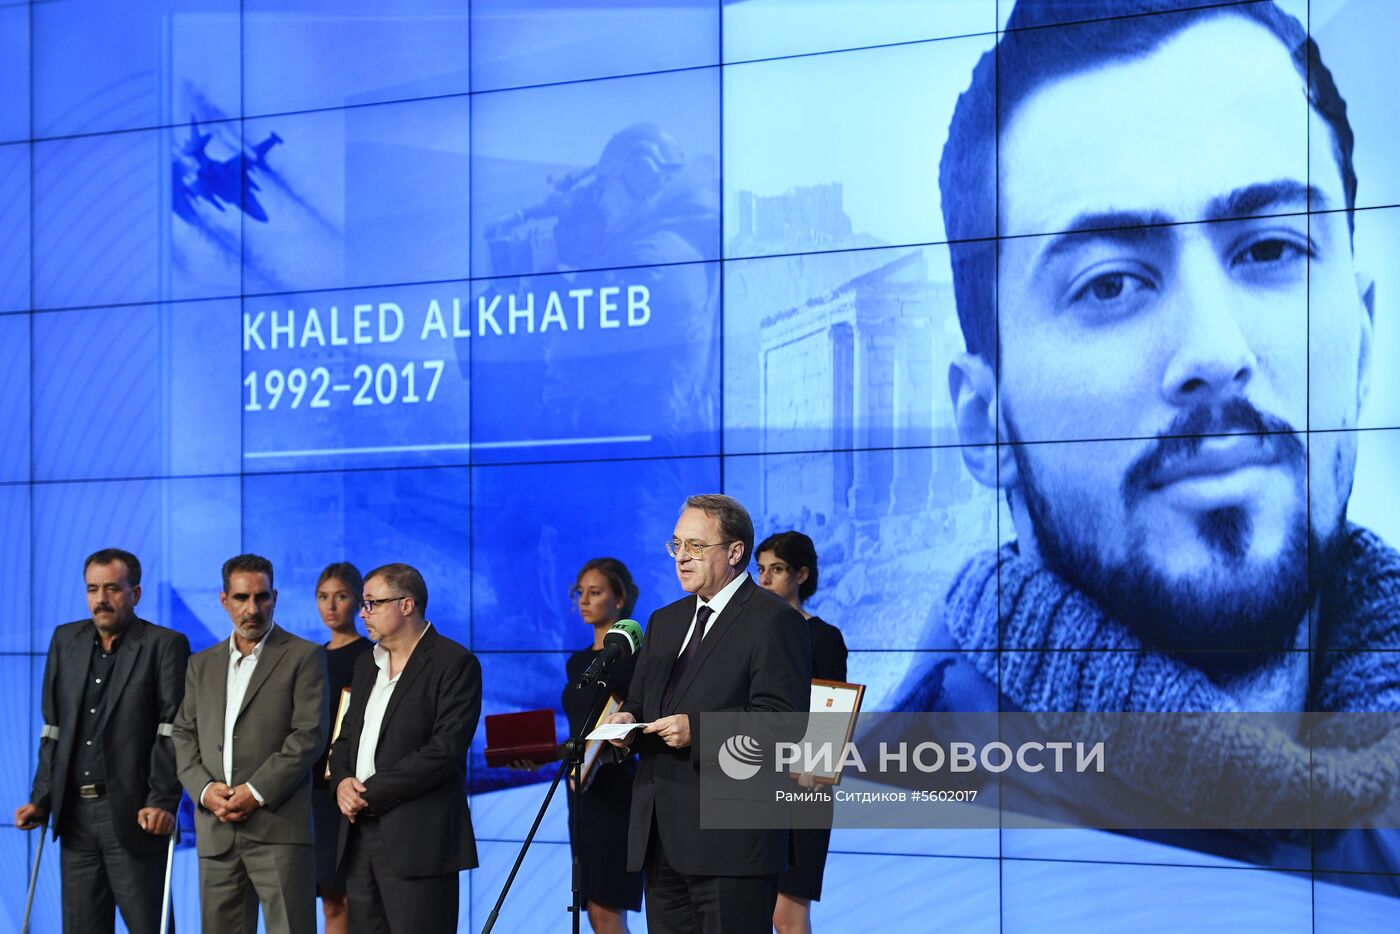 Вручение Международной премии в память о журналисте Халеде аль-Хатыбе